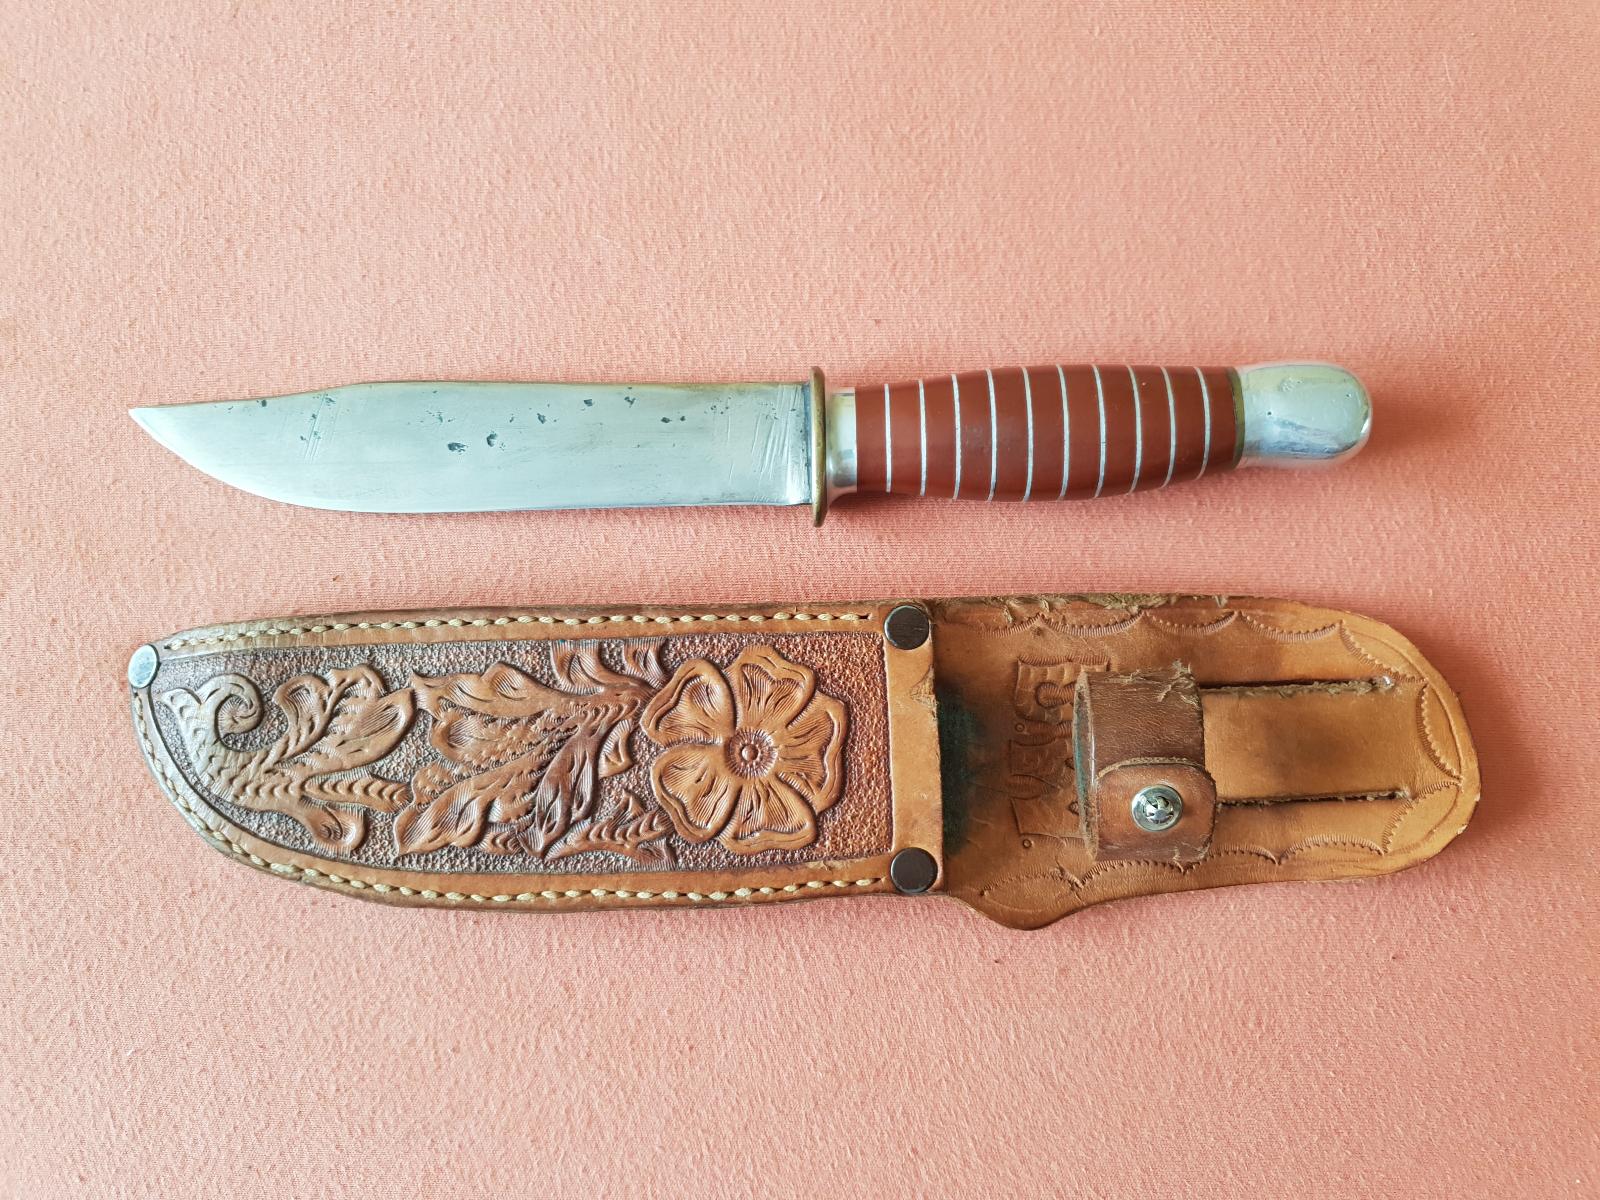 Starý lovecký nôž neznačený, kožené púzdro značené D.W. - Vojenské zberateľské predmety